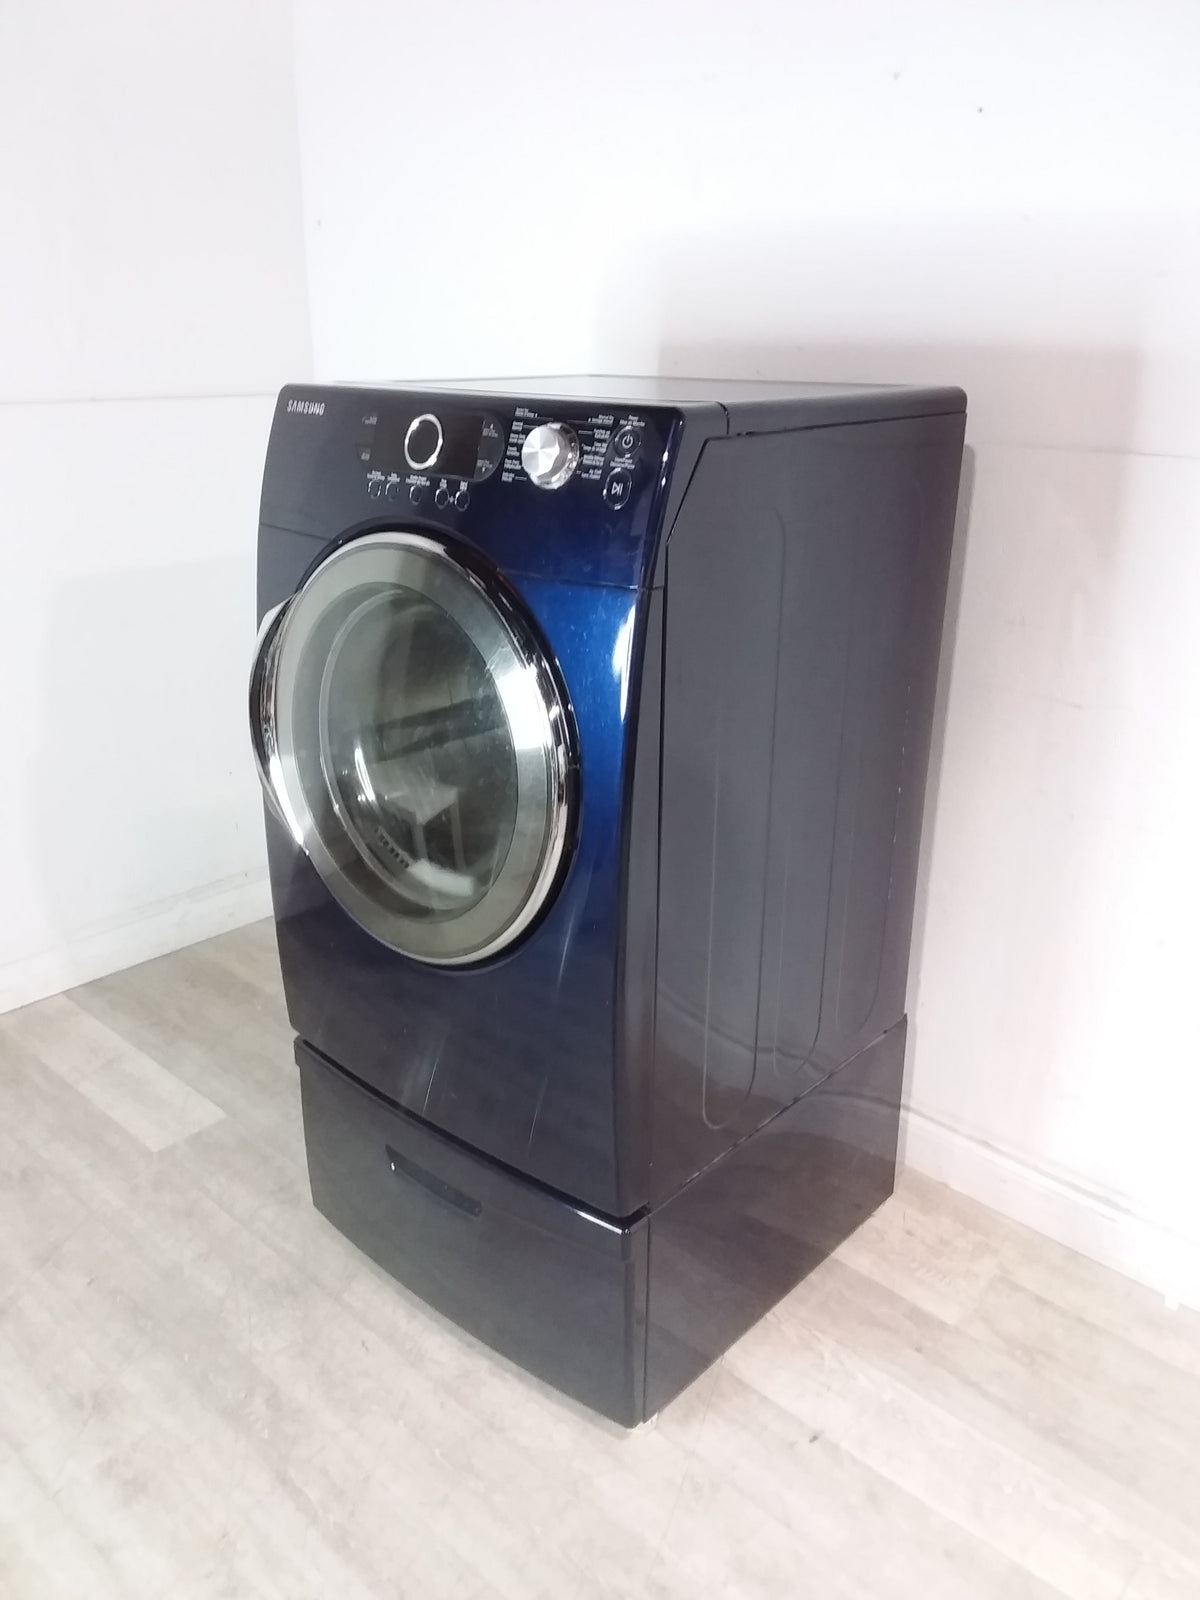 Samsung Dryer (Blue)